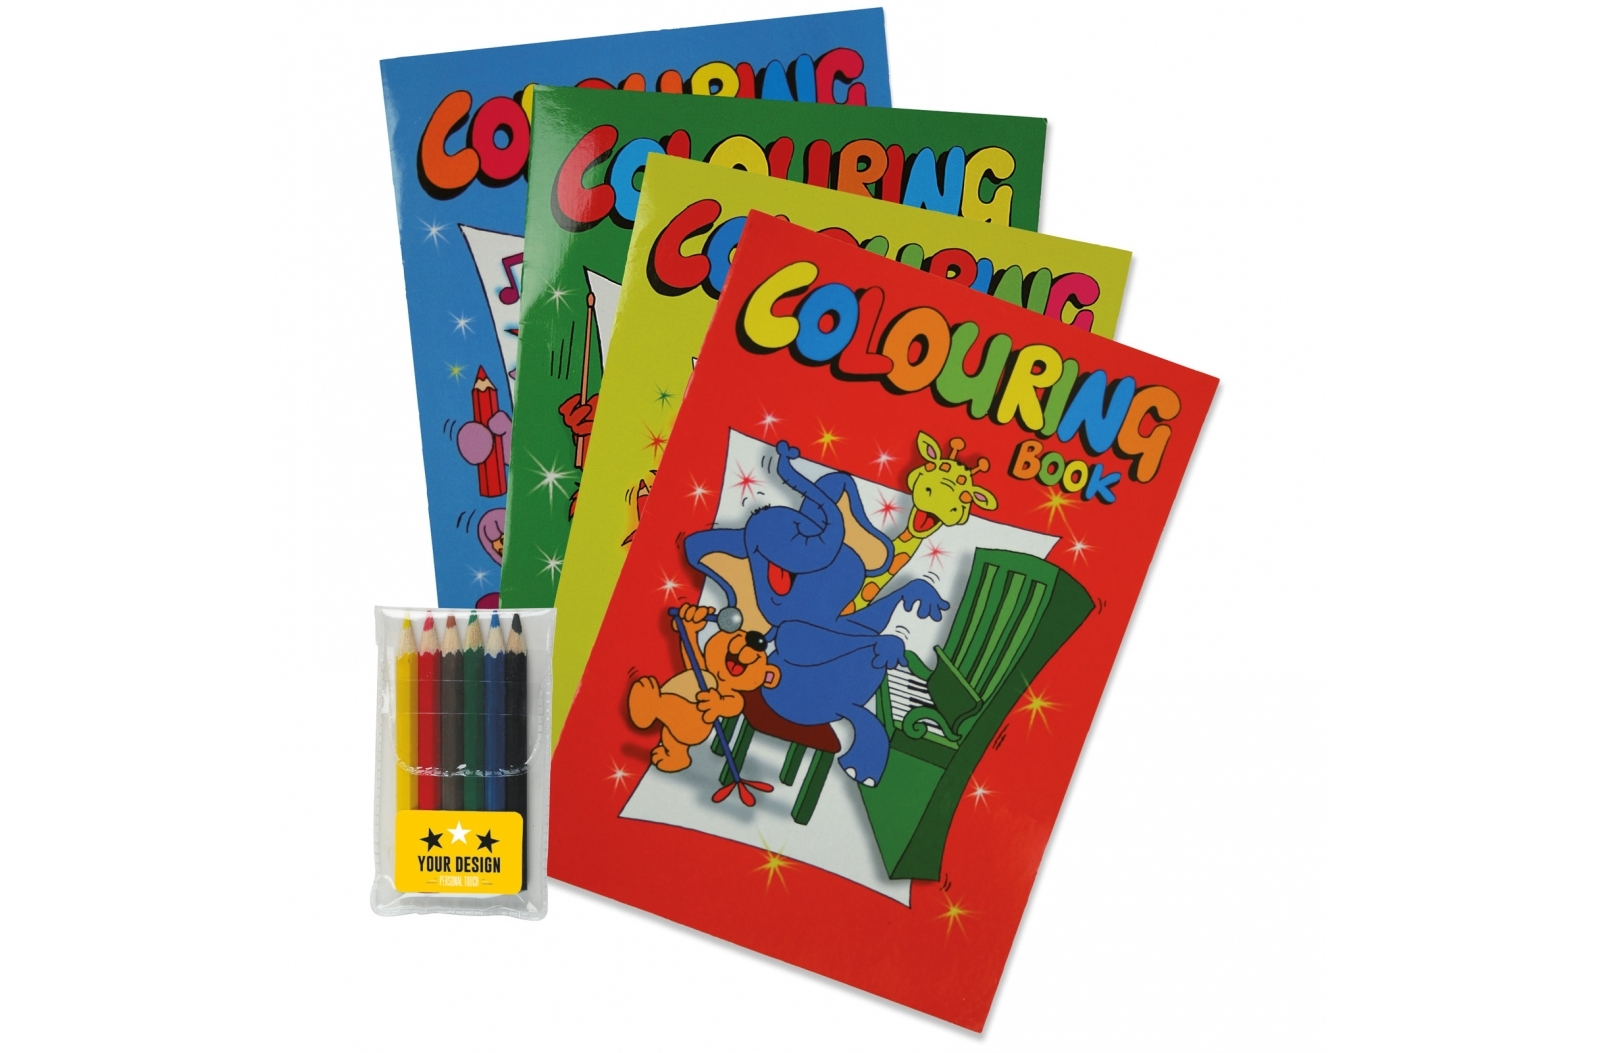 Libro da colorare A4 con matite colorate corte in borsa trasparente di polietilene - Fiesse